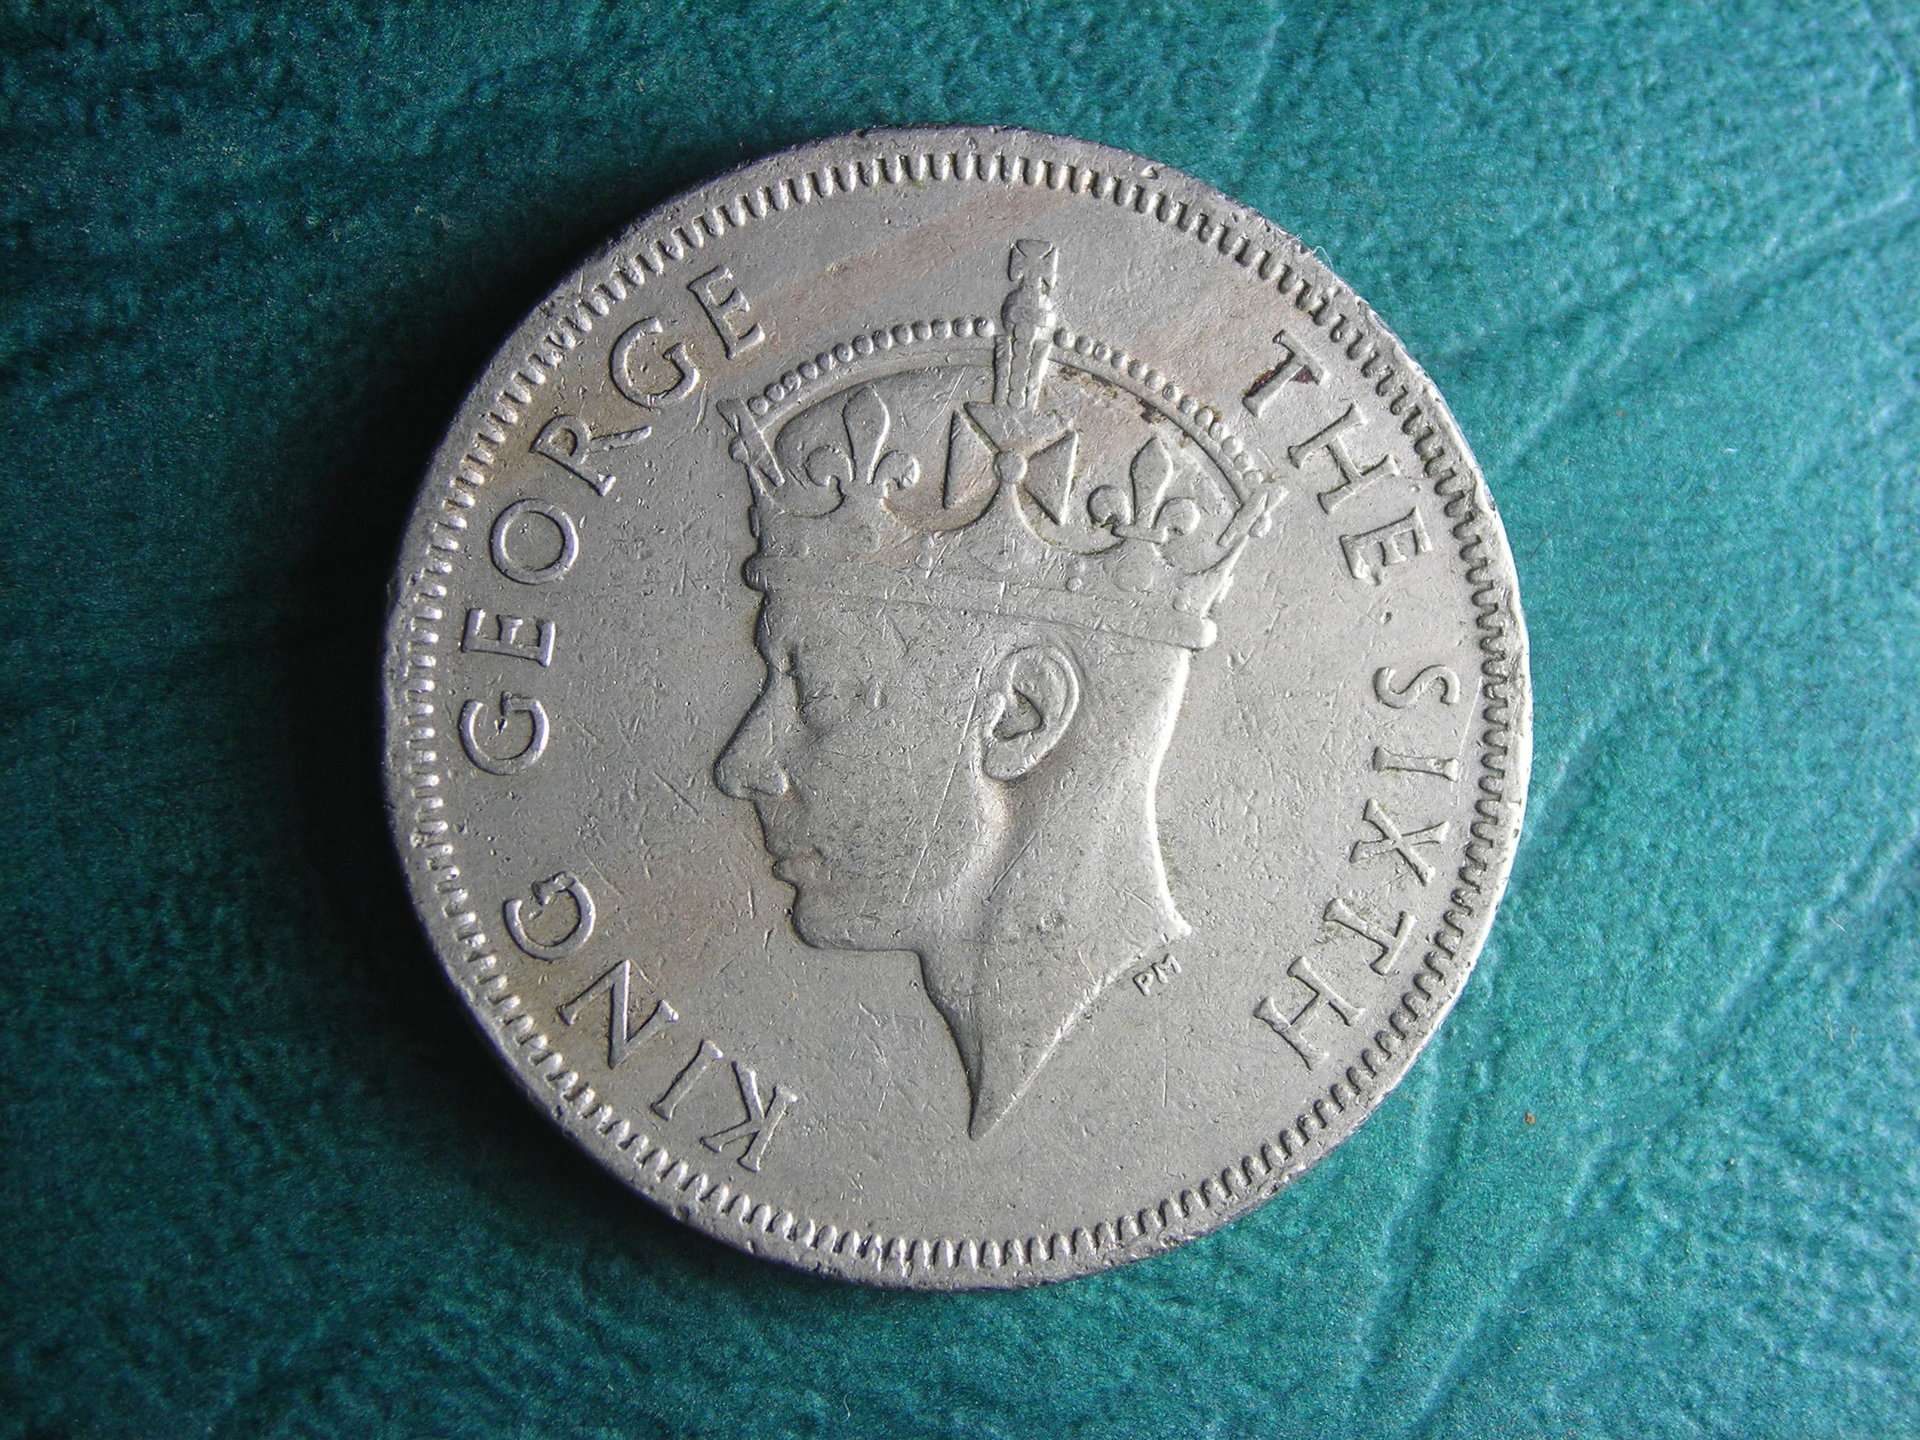 1951 S Rhodesia 2 shilling obv.JPG